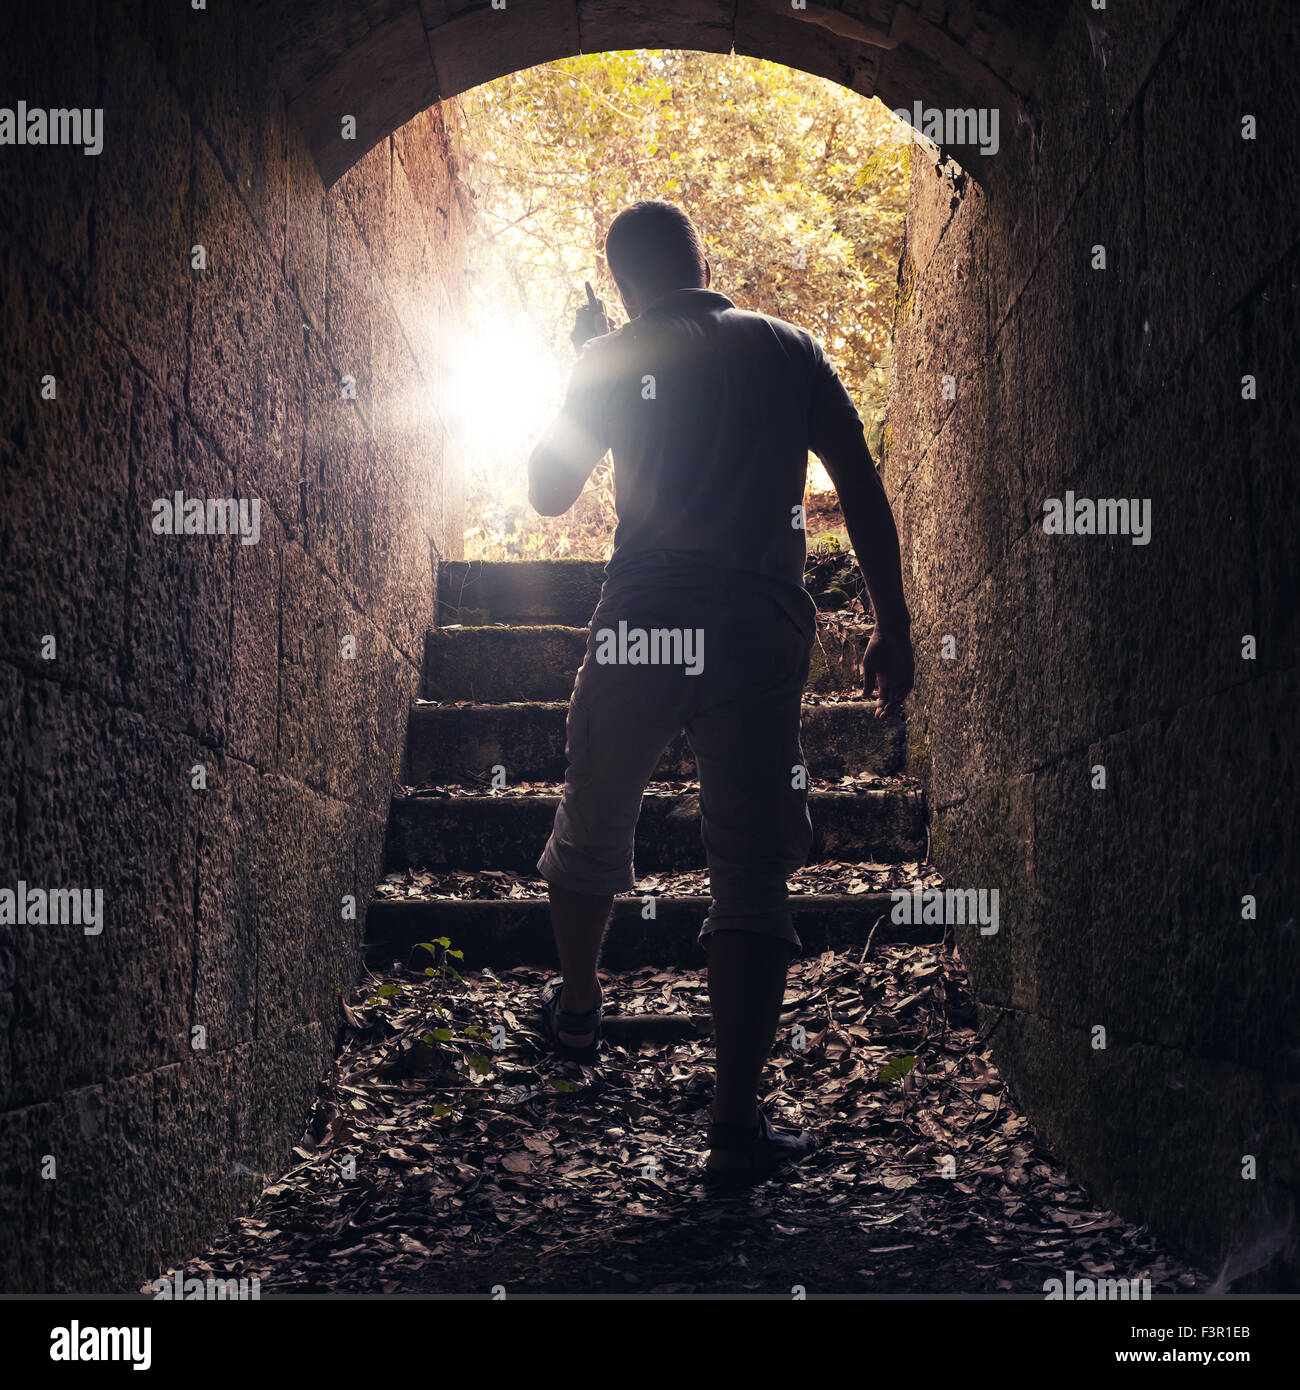 Jeune homme à la radio s'éteint de pierre sombre tunnel, photo aux teintes chaleureuses avec lentille effet glow Banque D'Images